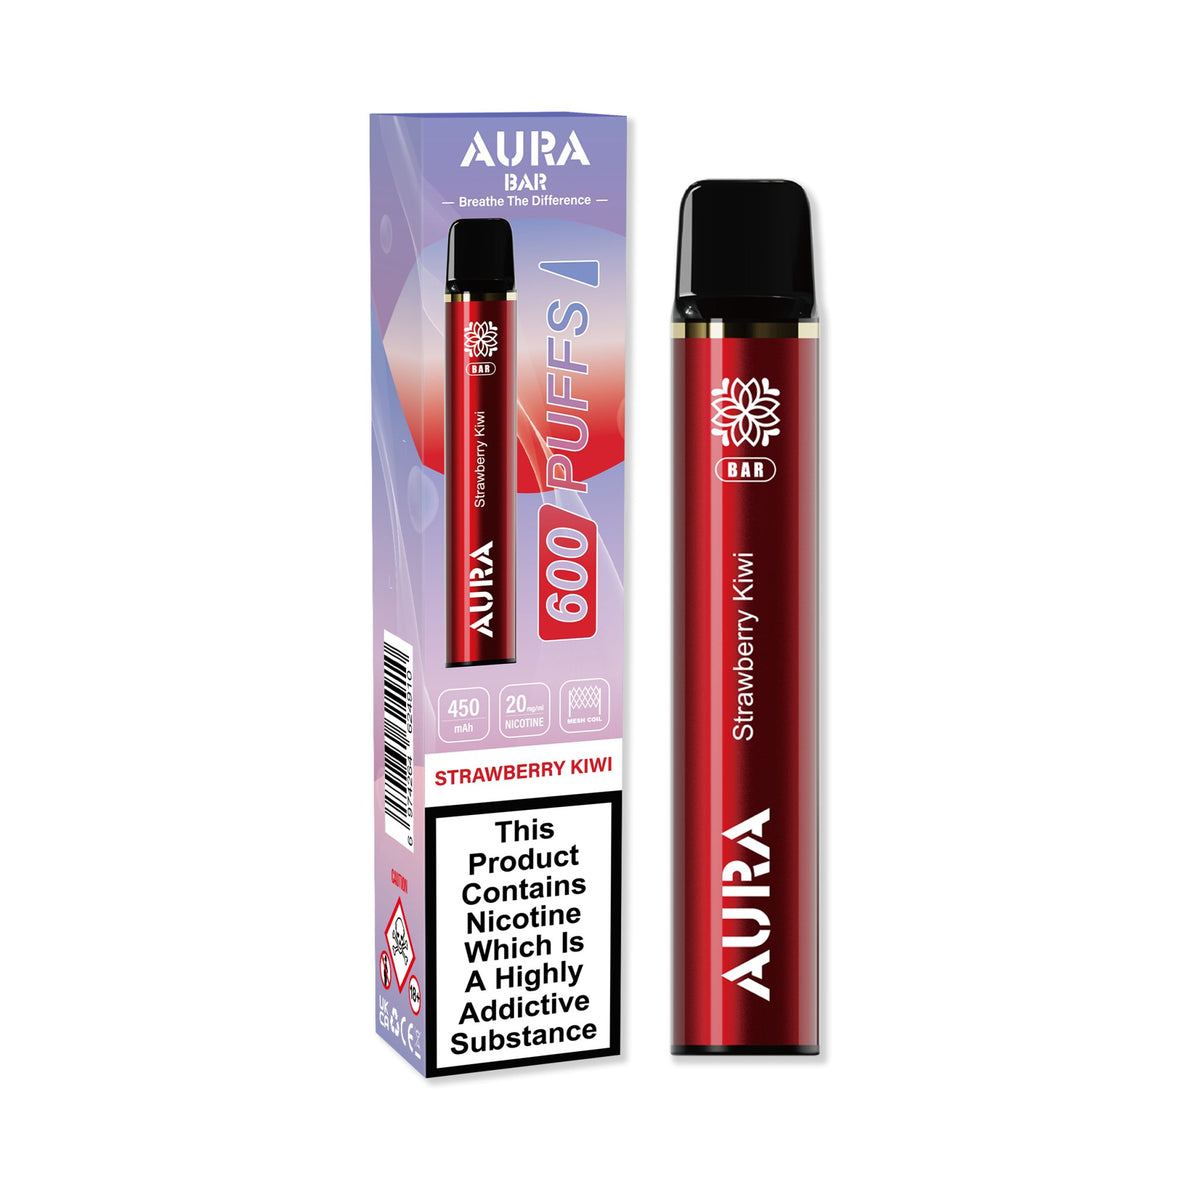 Aura Bar 600 Puffs Disposbale Vape Pod Box of 10 - Best Vape Wholesale